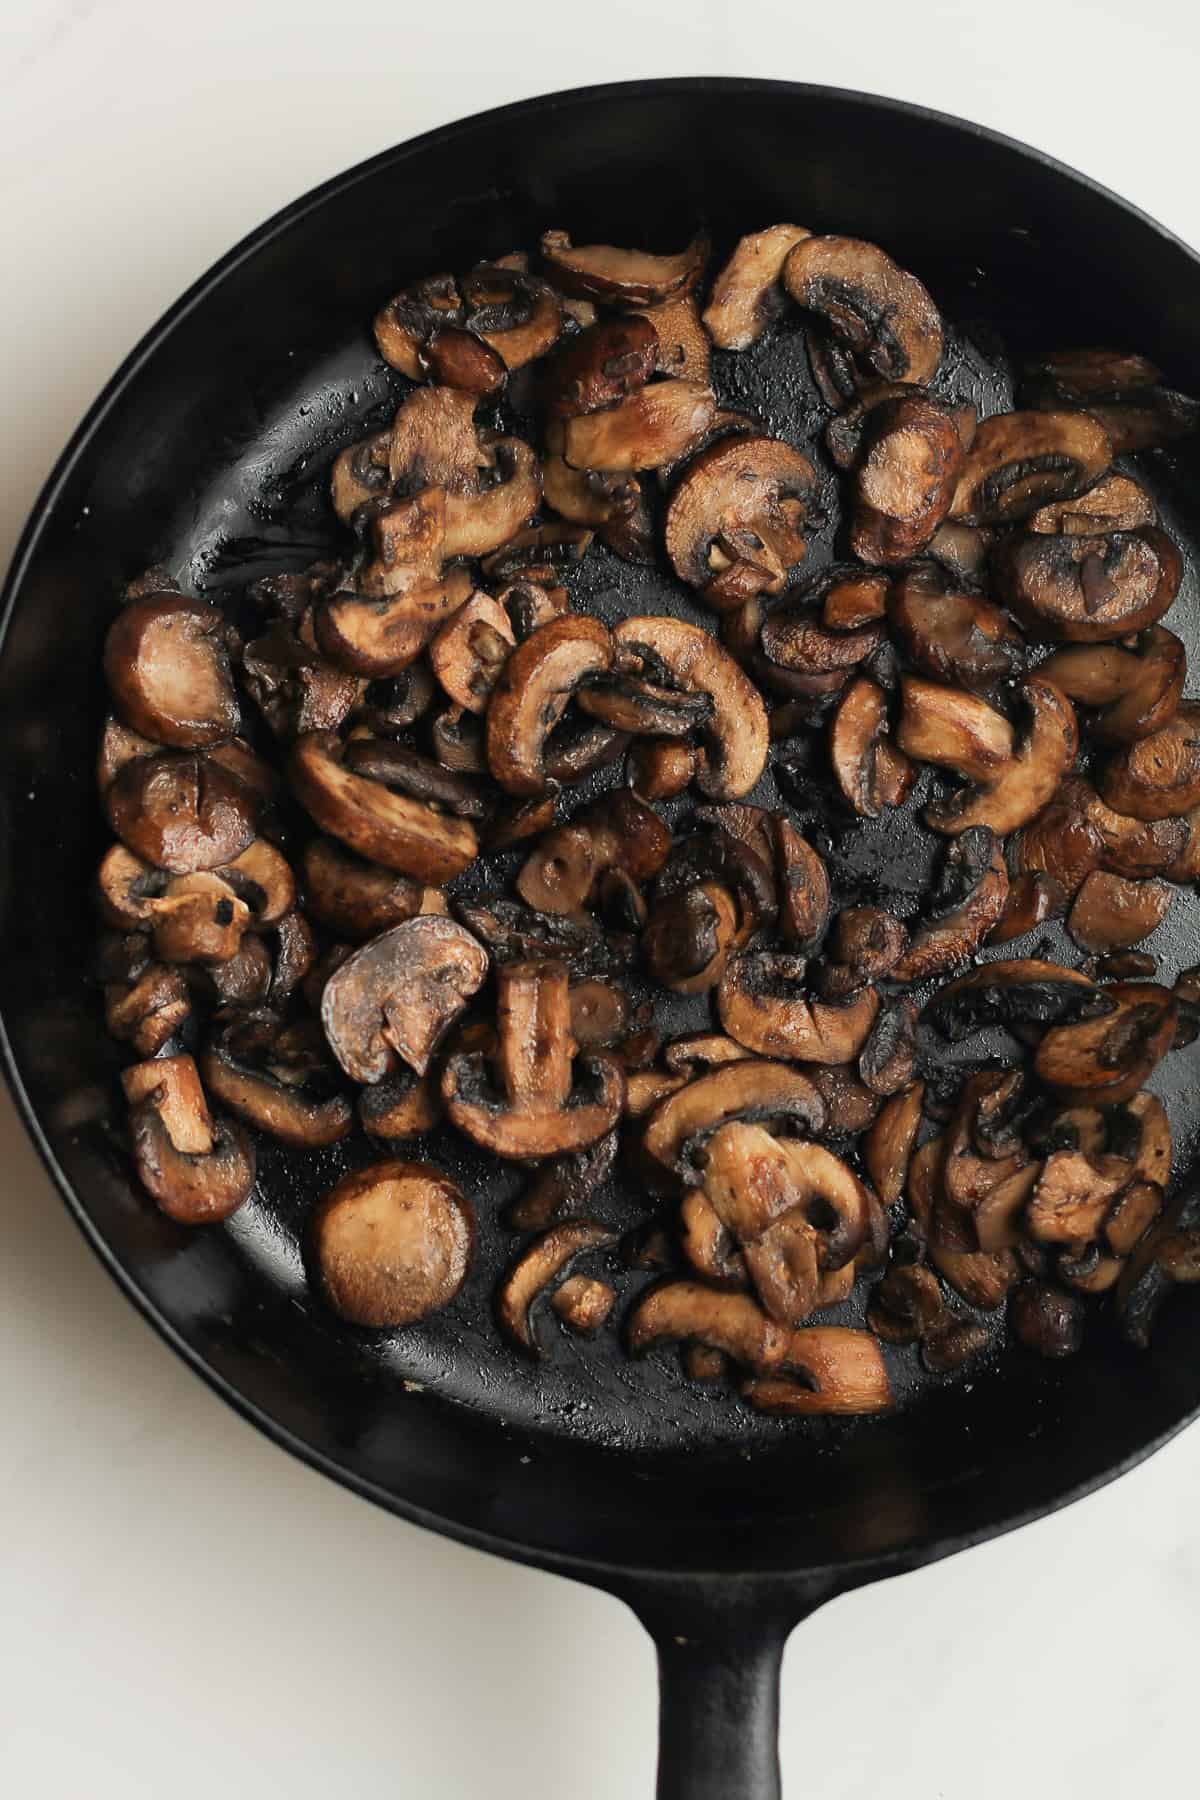 A skillet of sautéed mushrooms.